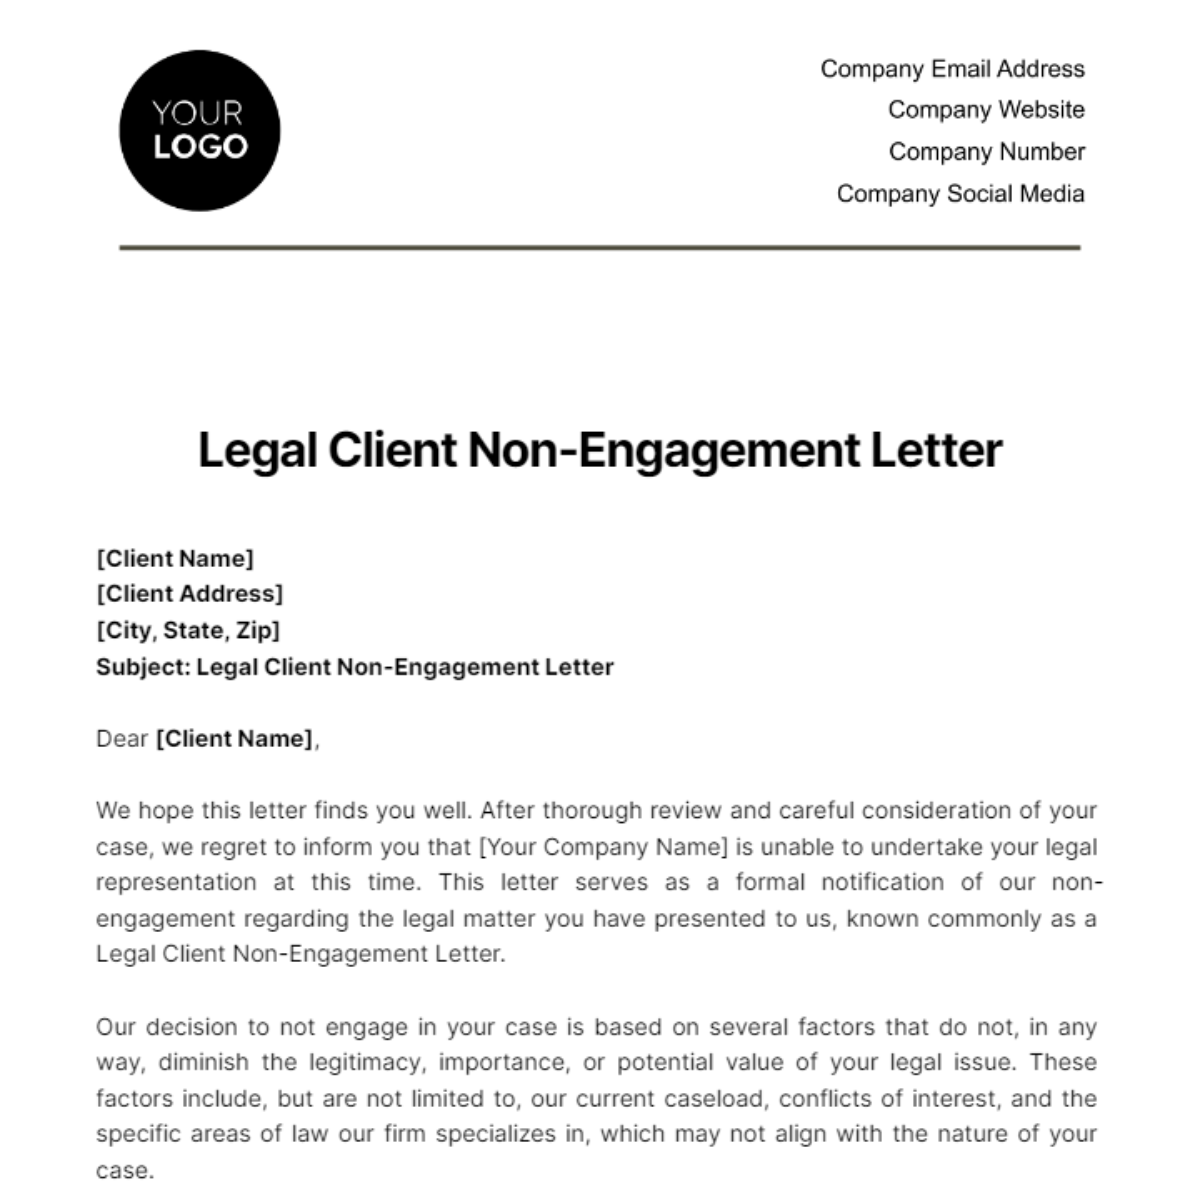 Free Legal Client Non-Engagement Letter Template